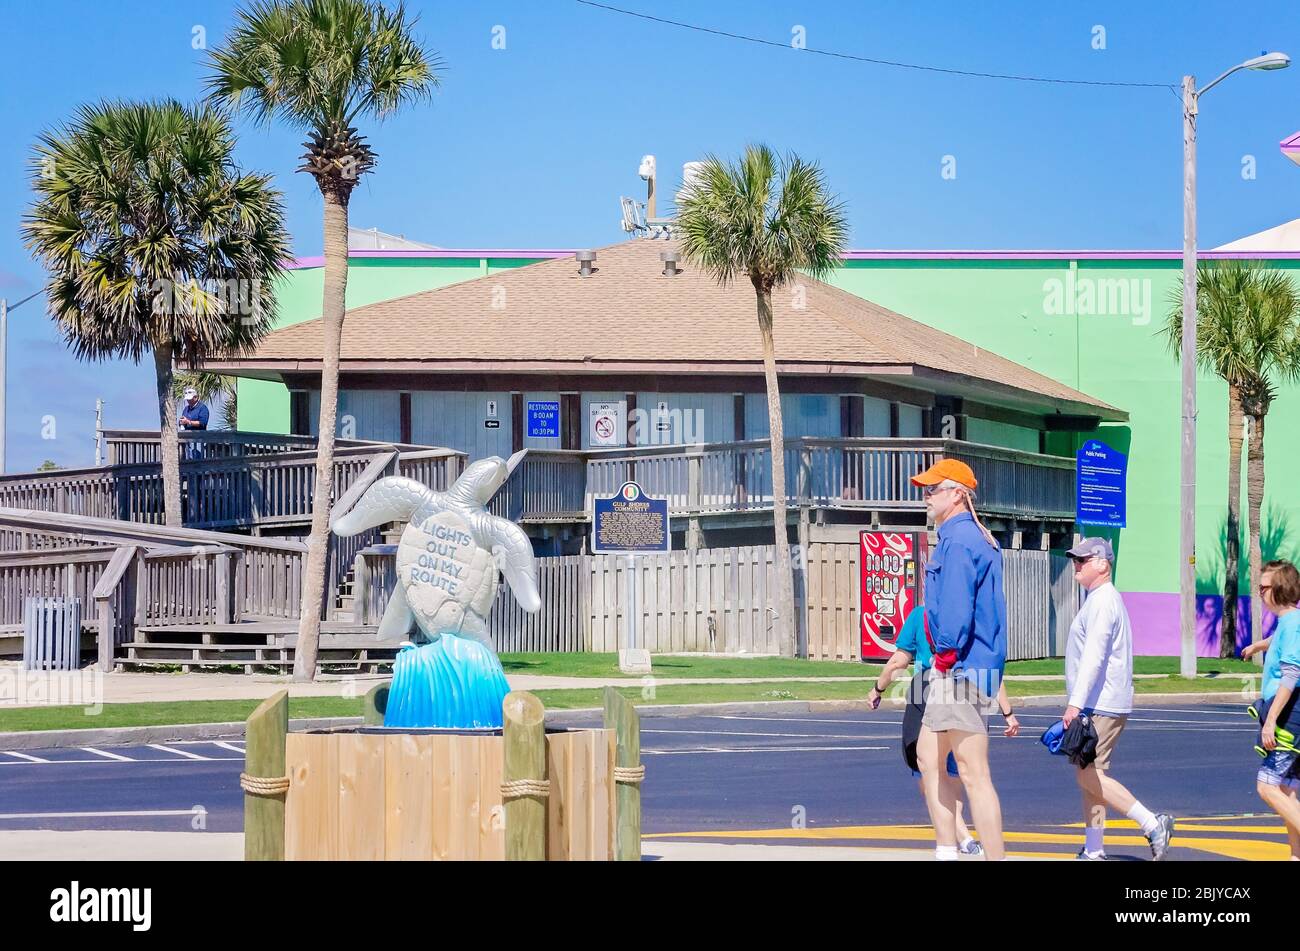 Touristen gehen an einer Schildkrötenskulptur vorbei, die in der Innenstadt in der Nähe des Strandes steht, als Teil eines öffentlichen Kunstprojekts, 4. März 2016, in Gulf Shores, Alabama. Stockfoto